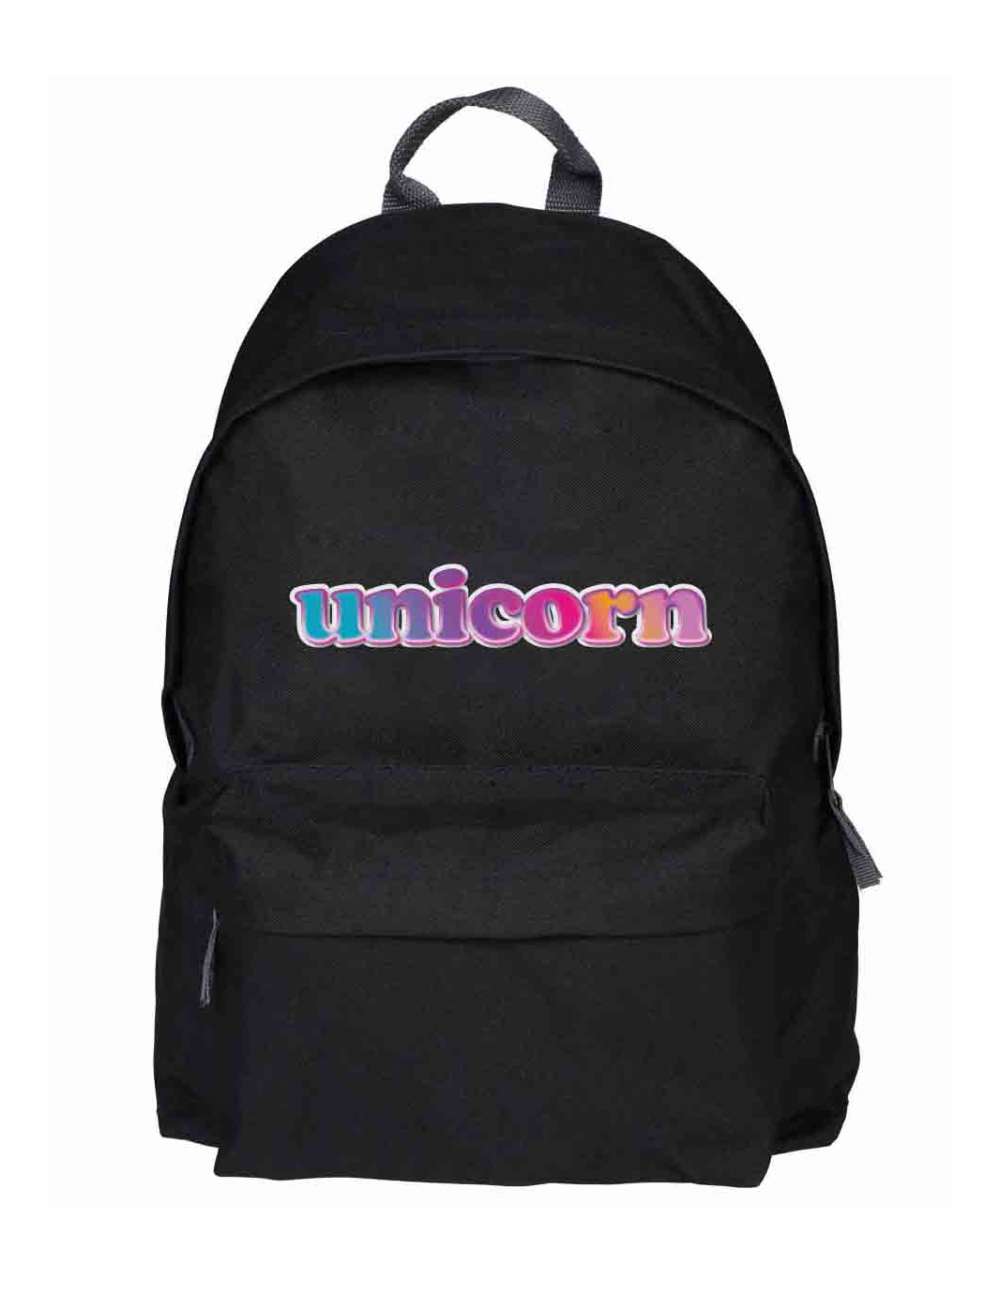 Plecak Szkolny Unicorn Kolor